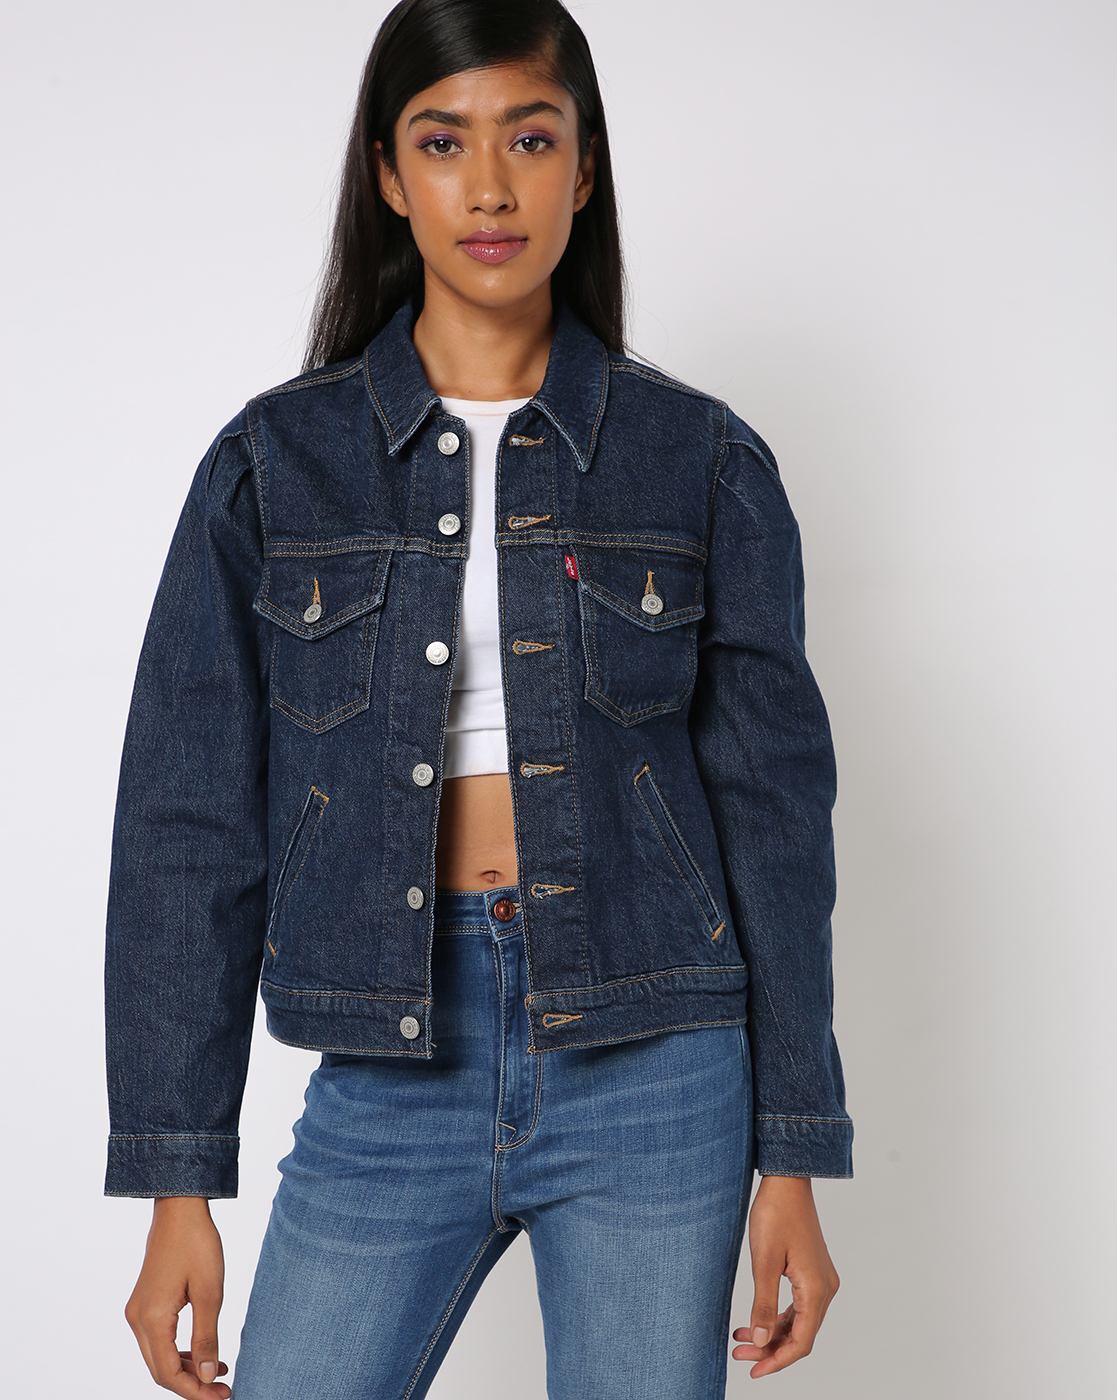 Women's Jacket Sale - Jean Jackets & Outerwear on Sale | Levi's® US